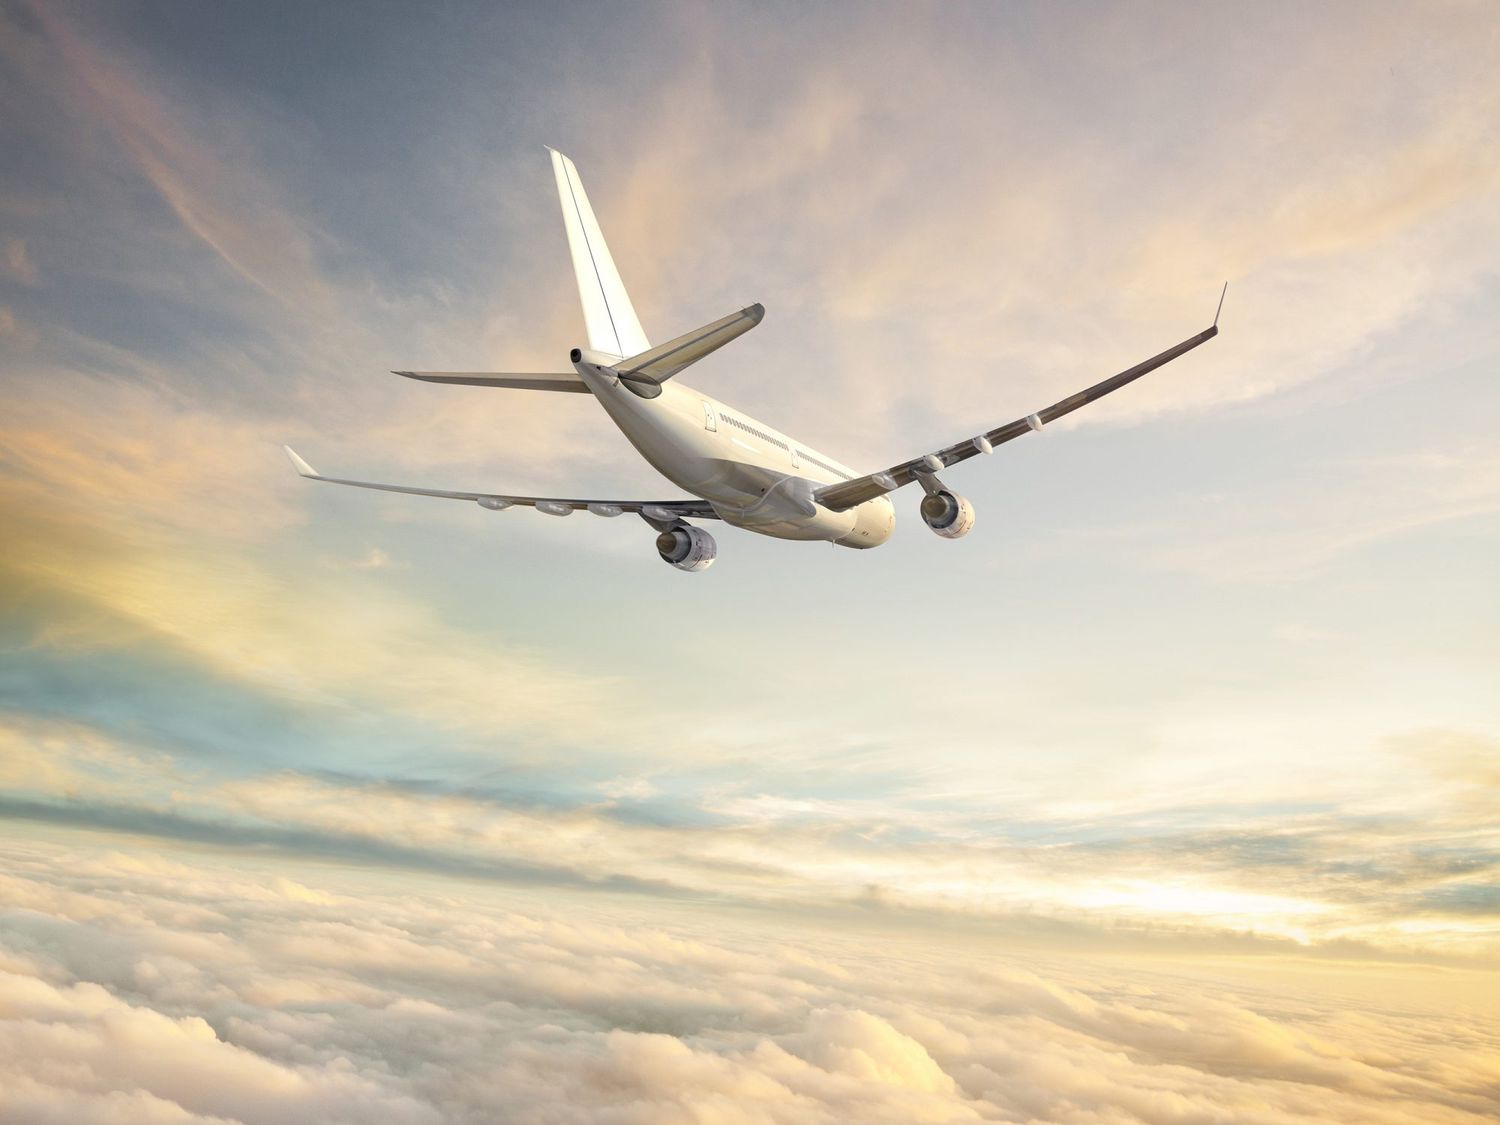 airline-improvements-2021-new-planes-routes-rewards